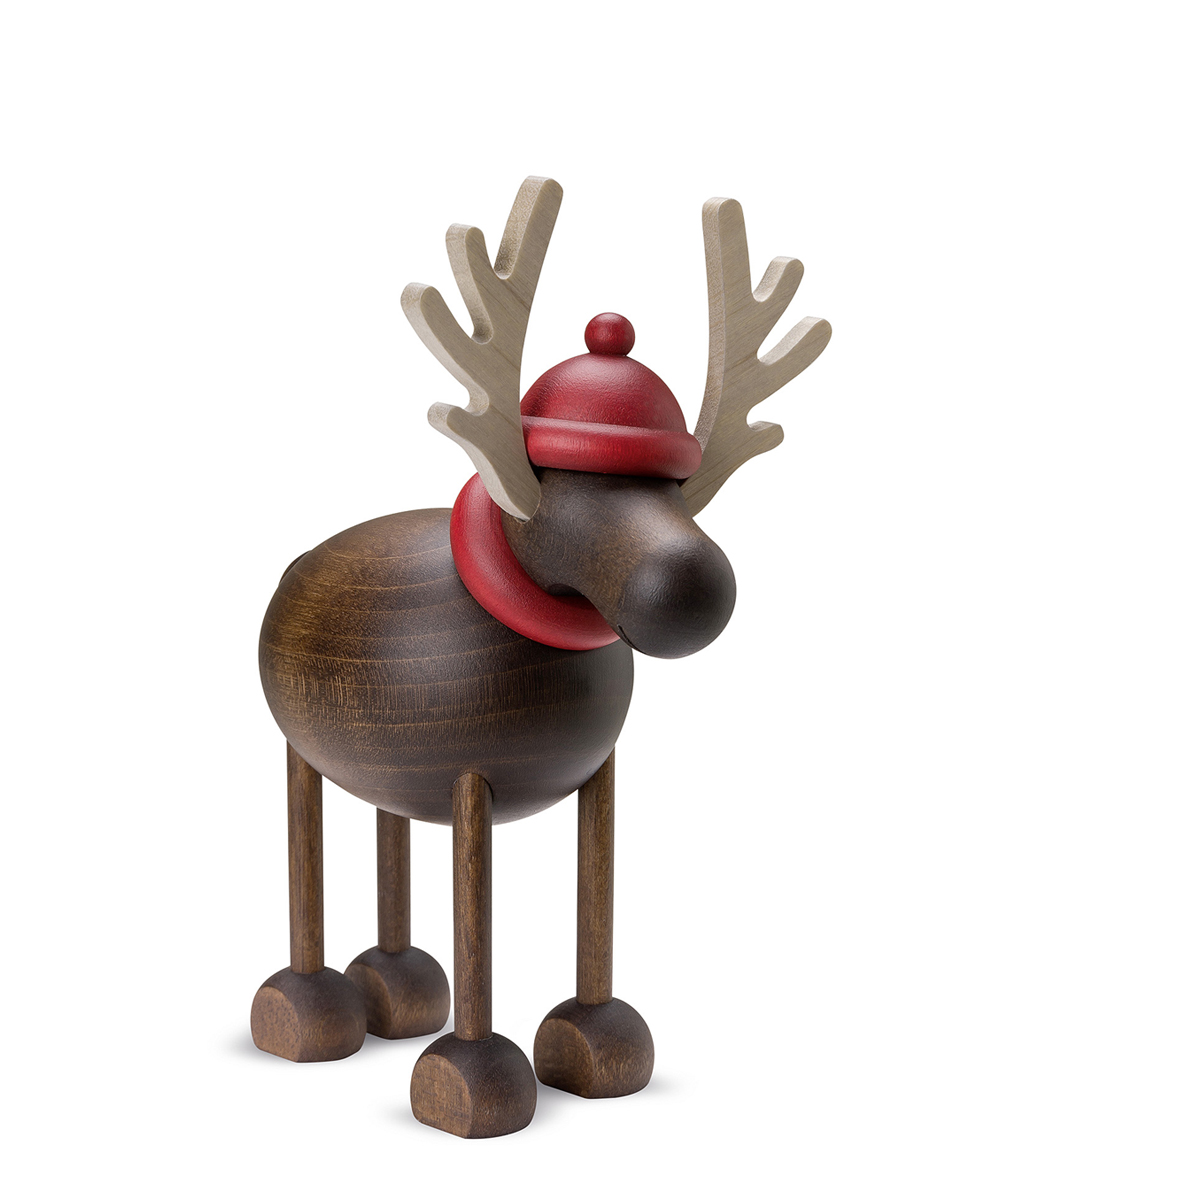 Rudolf the Reindeer standing